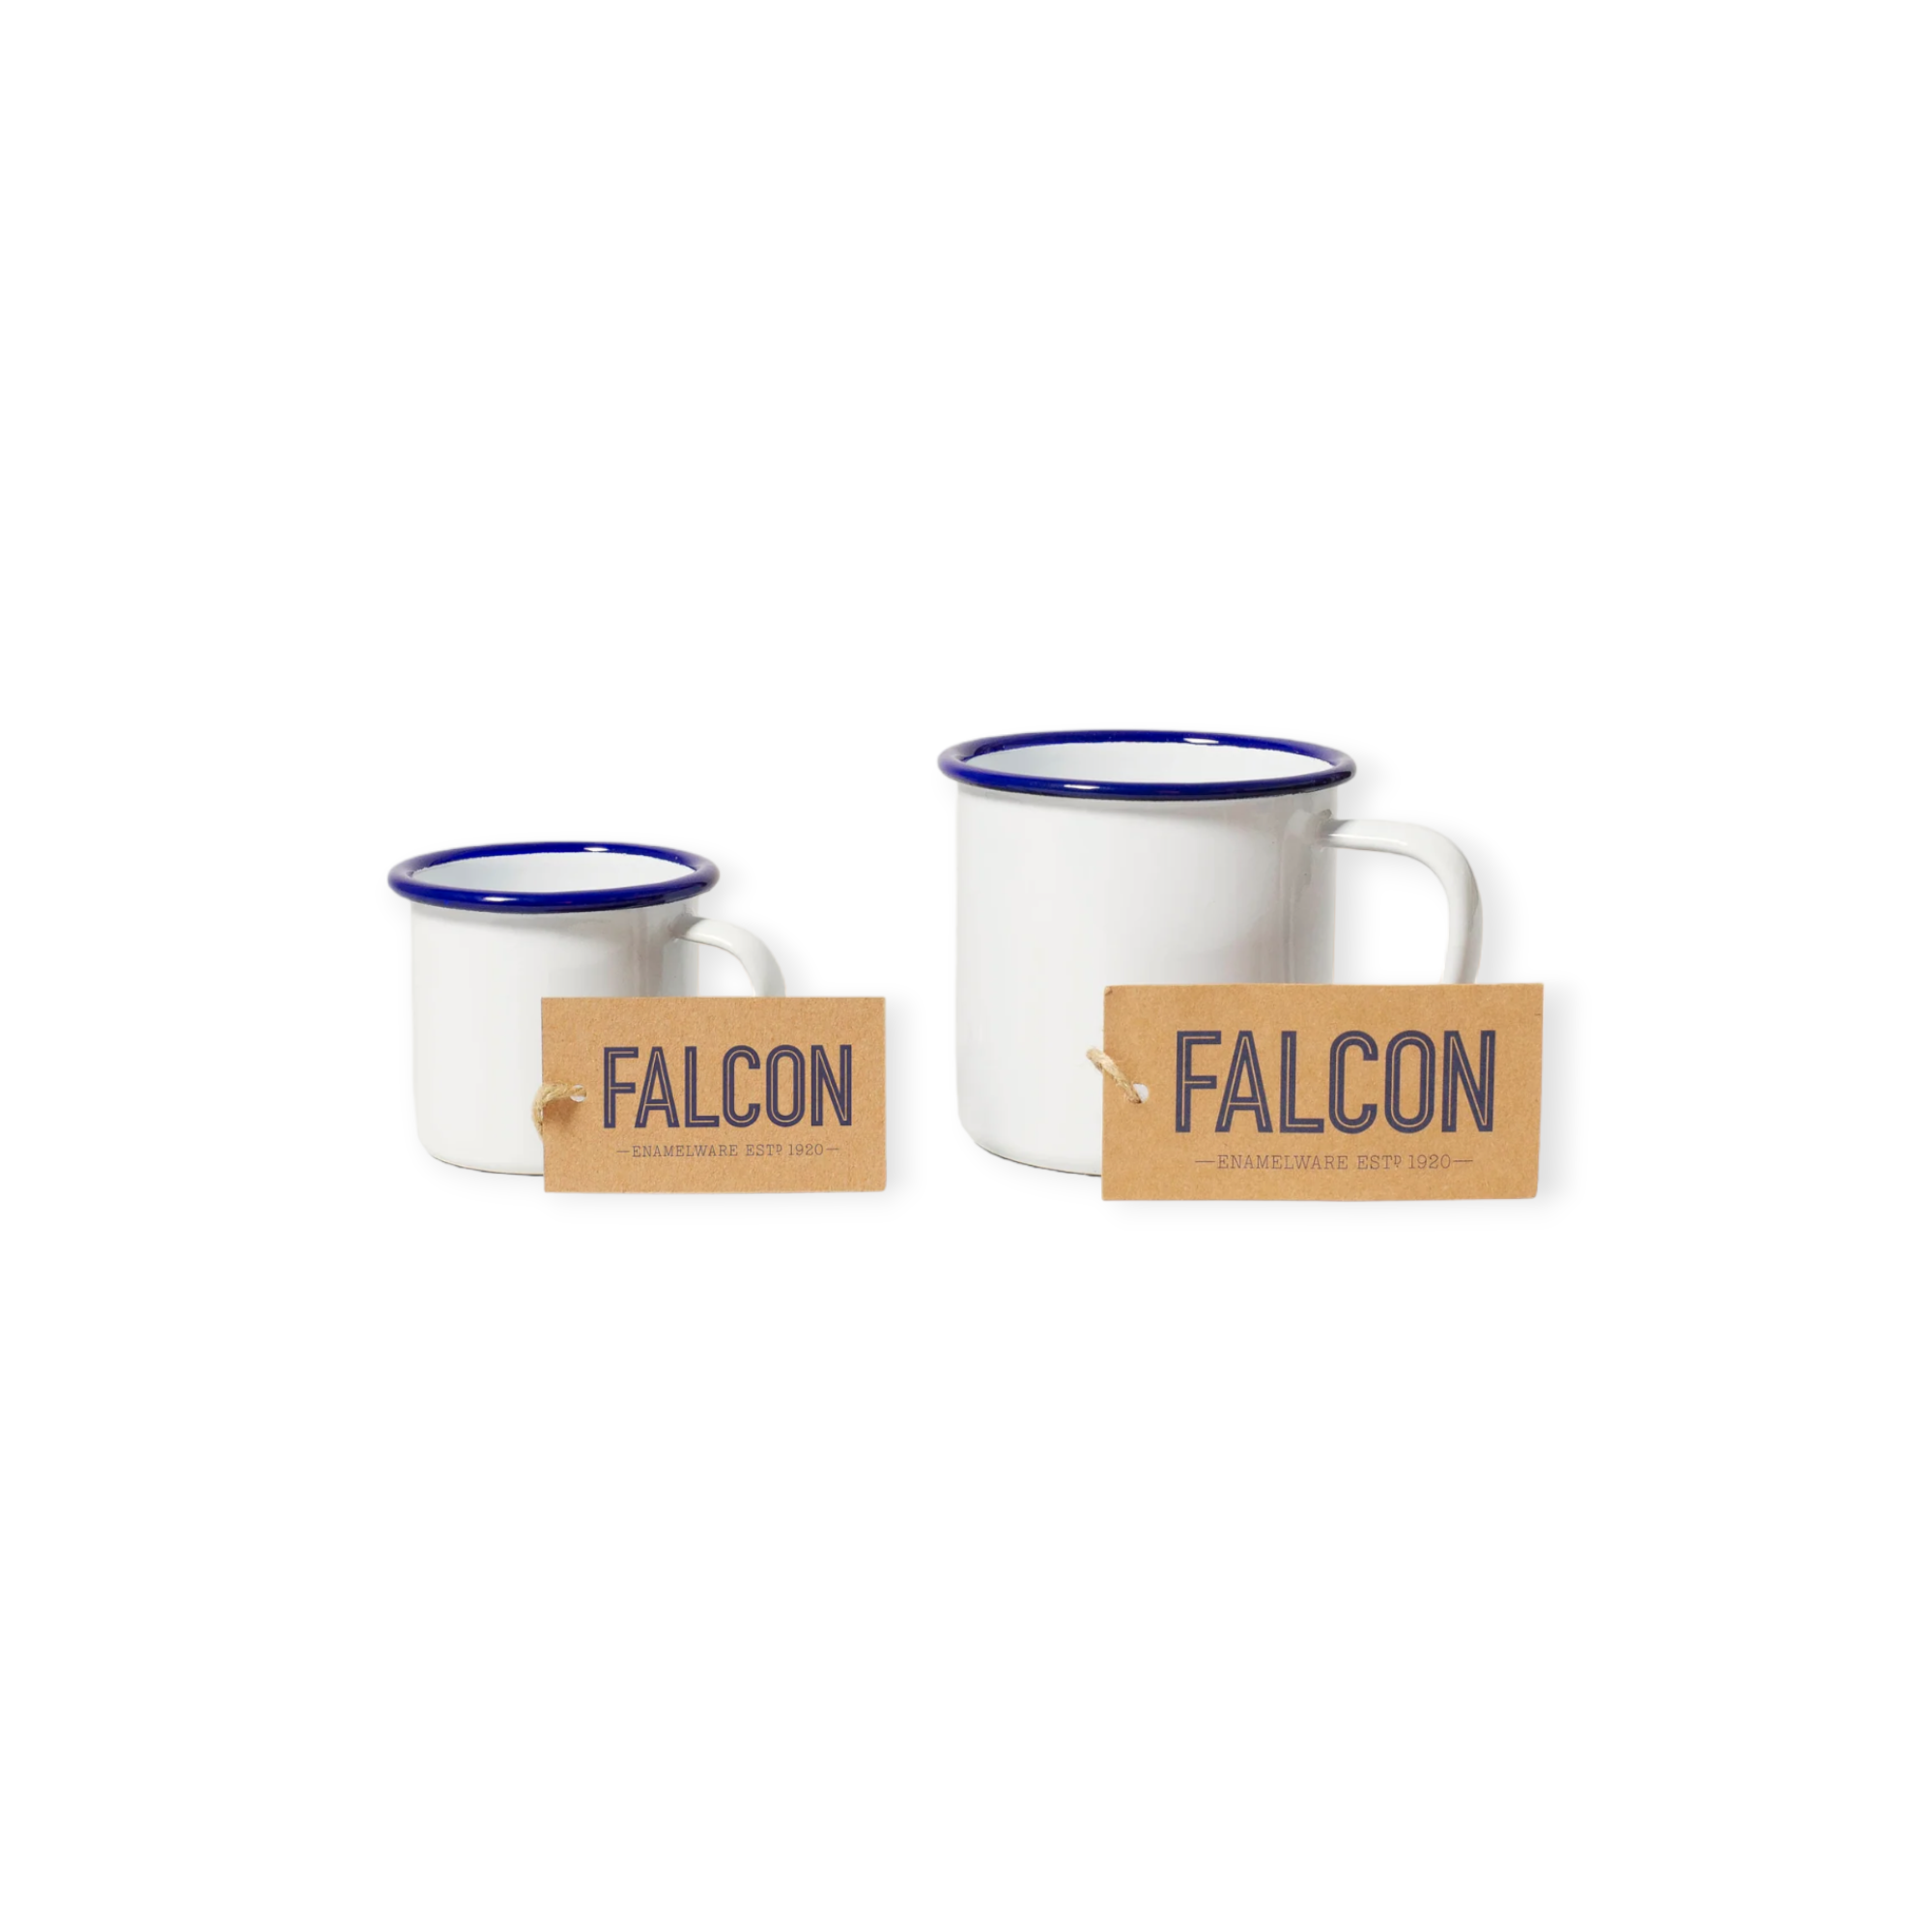 Falcon - 琺瑯馬克杯 - White with Blue rim